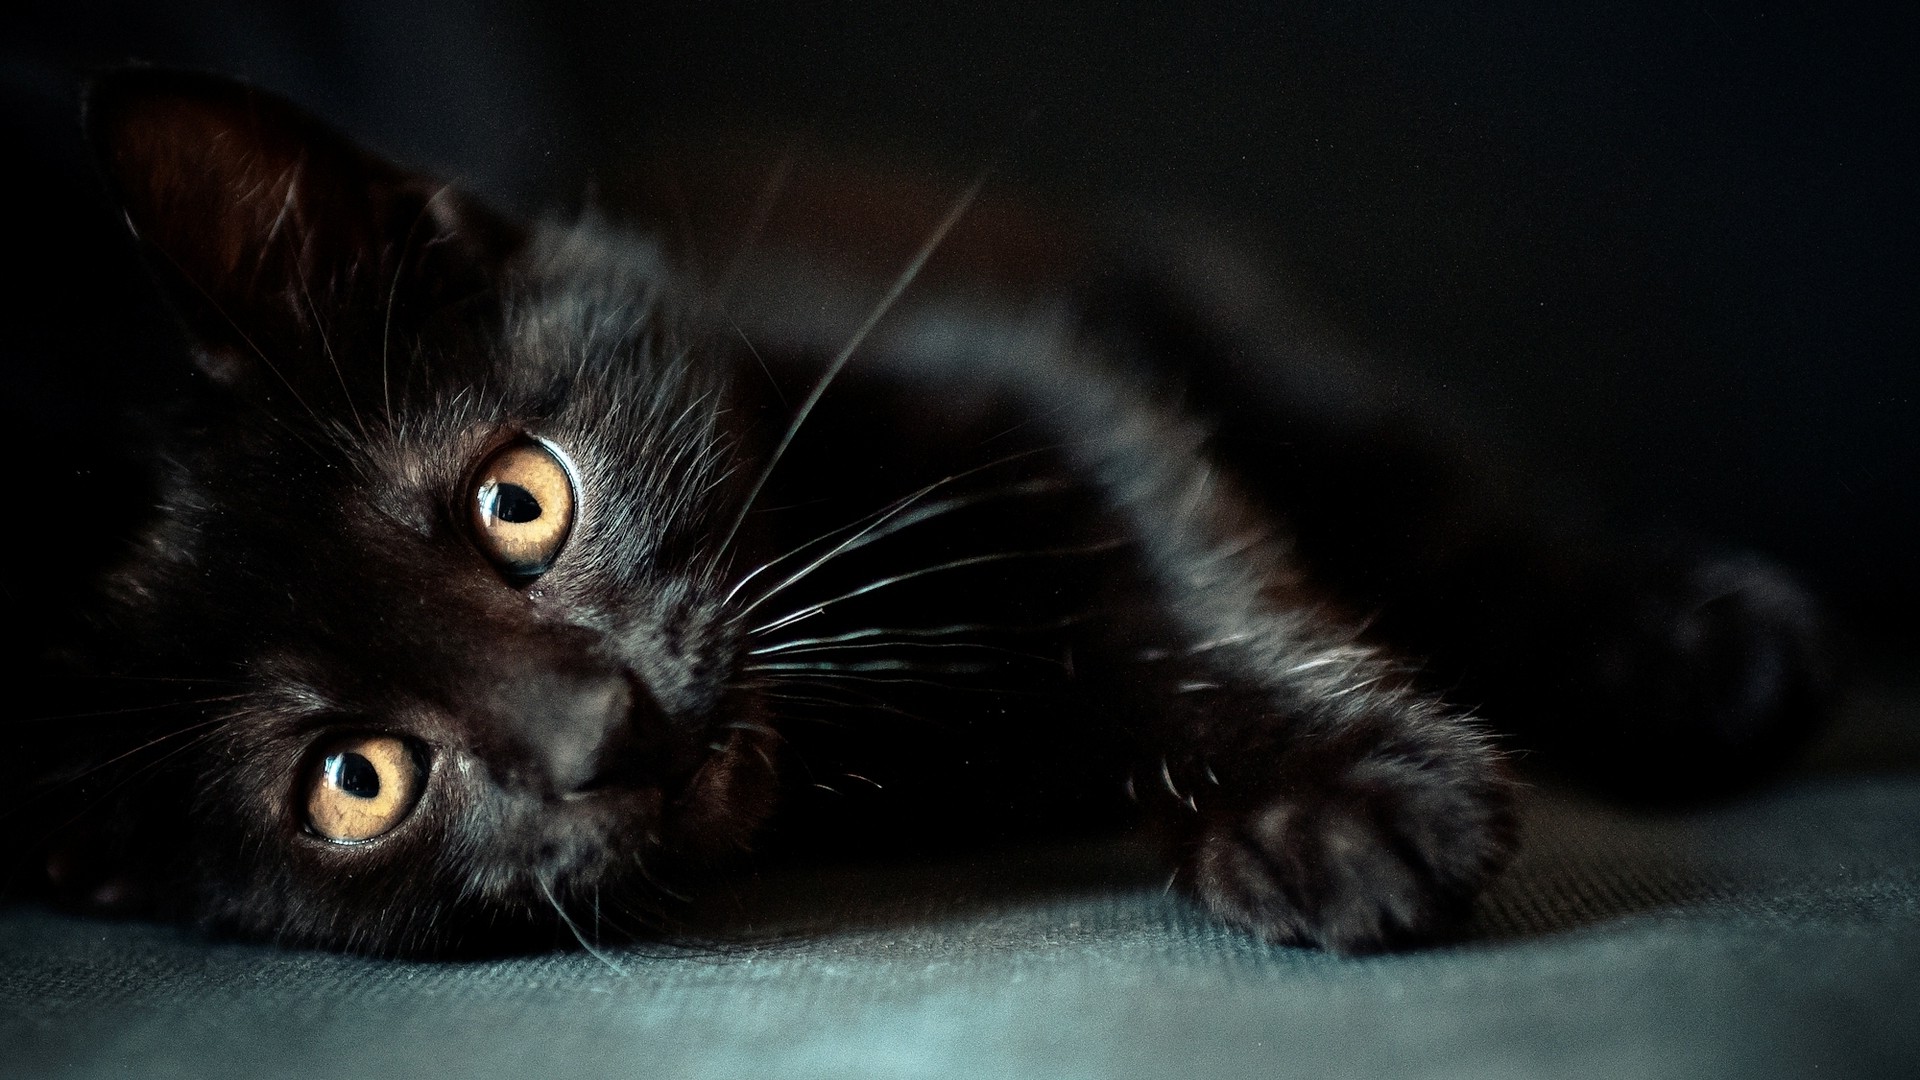 gatto nero wallpaper hd,gatto,gatti di piccola e media taglia,gatto nero,felidae,barba